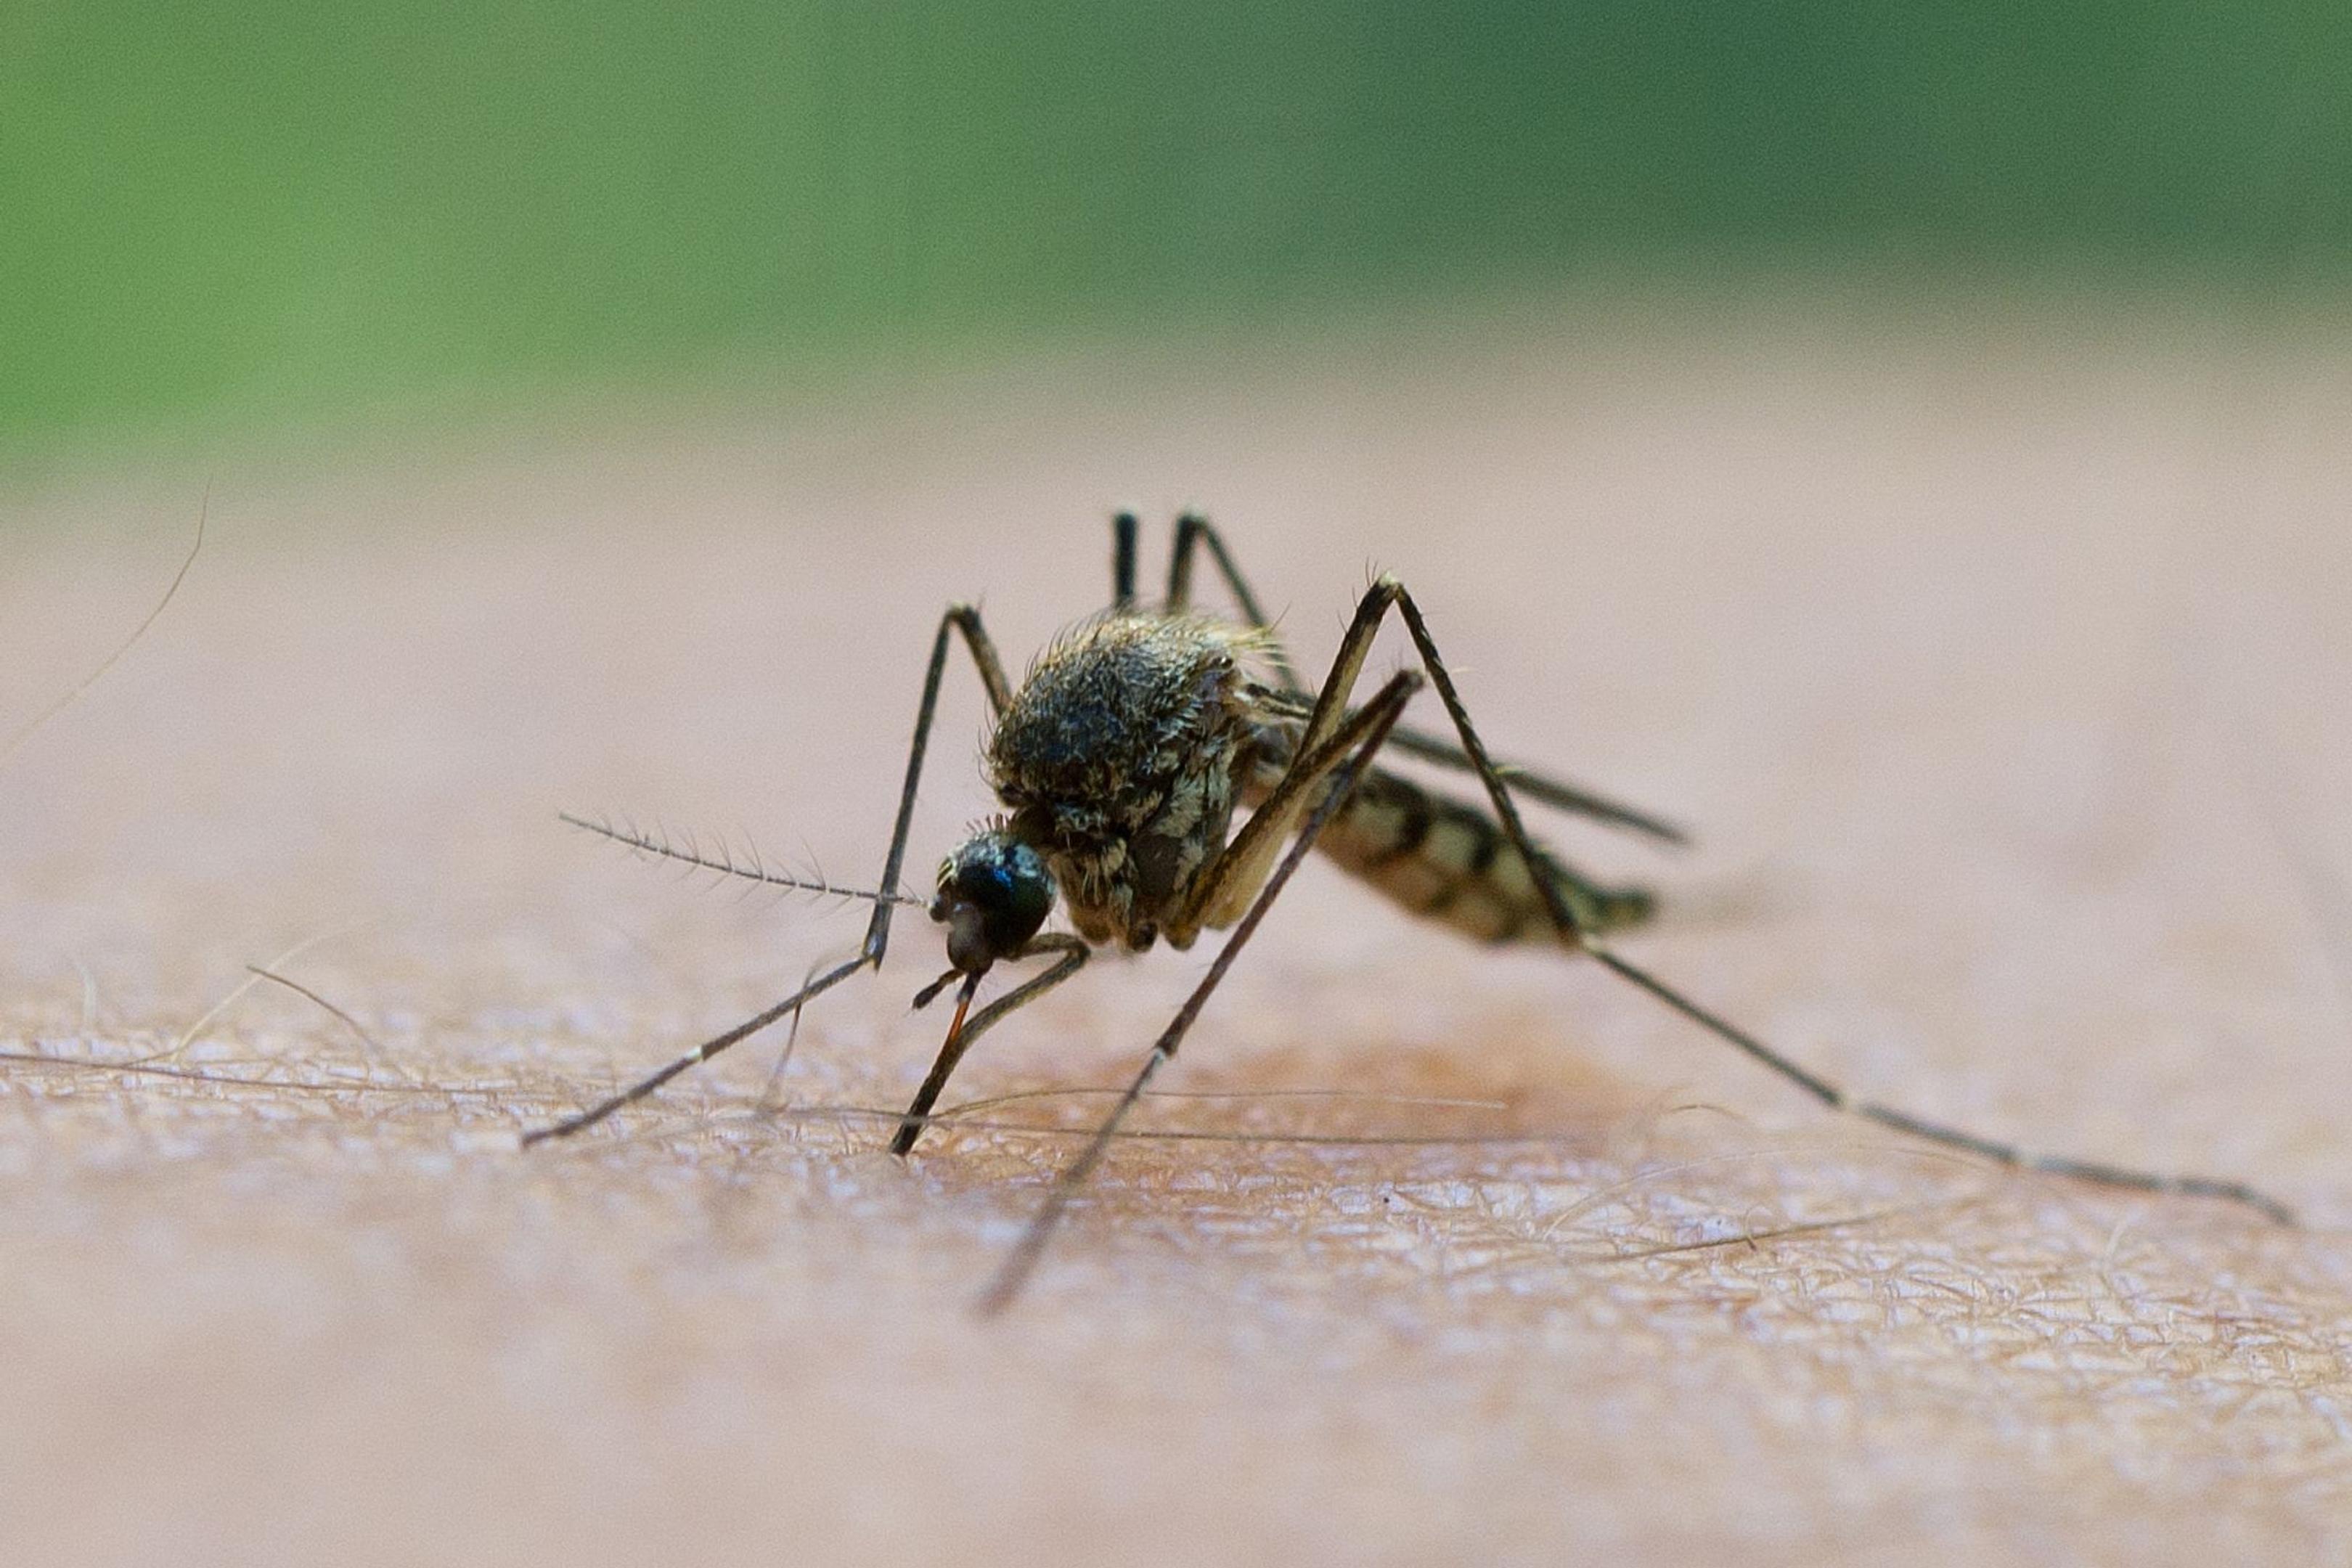 Der Stich einer Mücke kann schmerzhaft sein. Gerade nach dem feuchten Wetter und bei steigenden Temperaturen sollte man sich schützen.